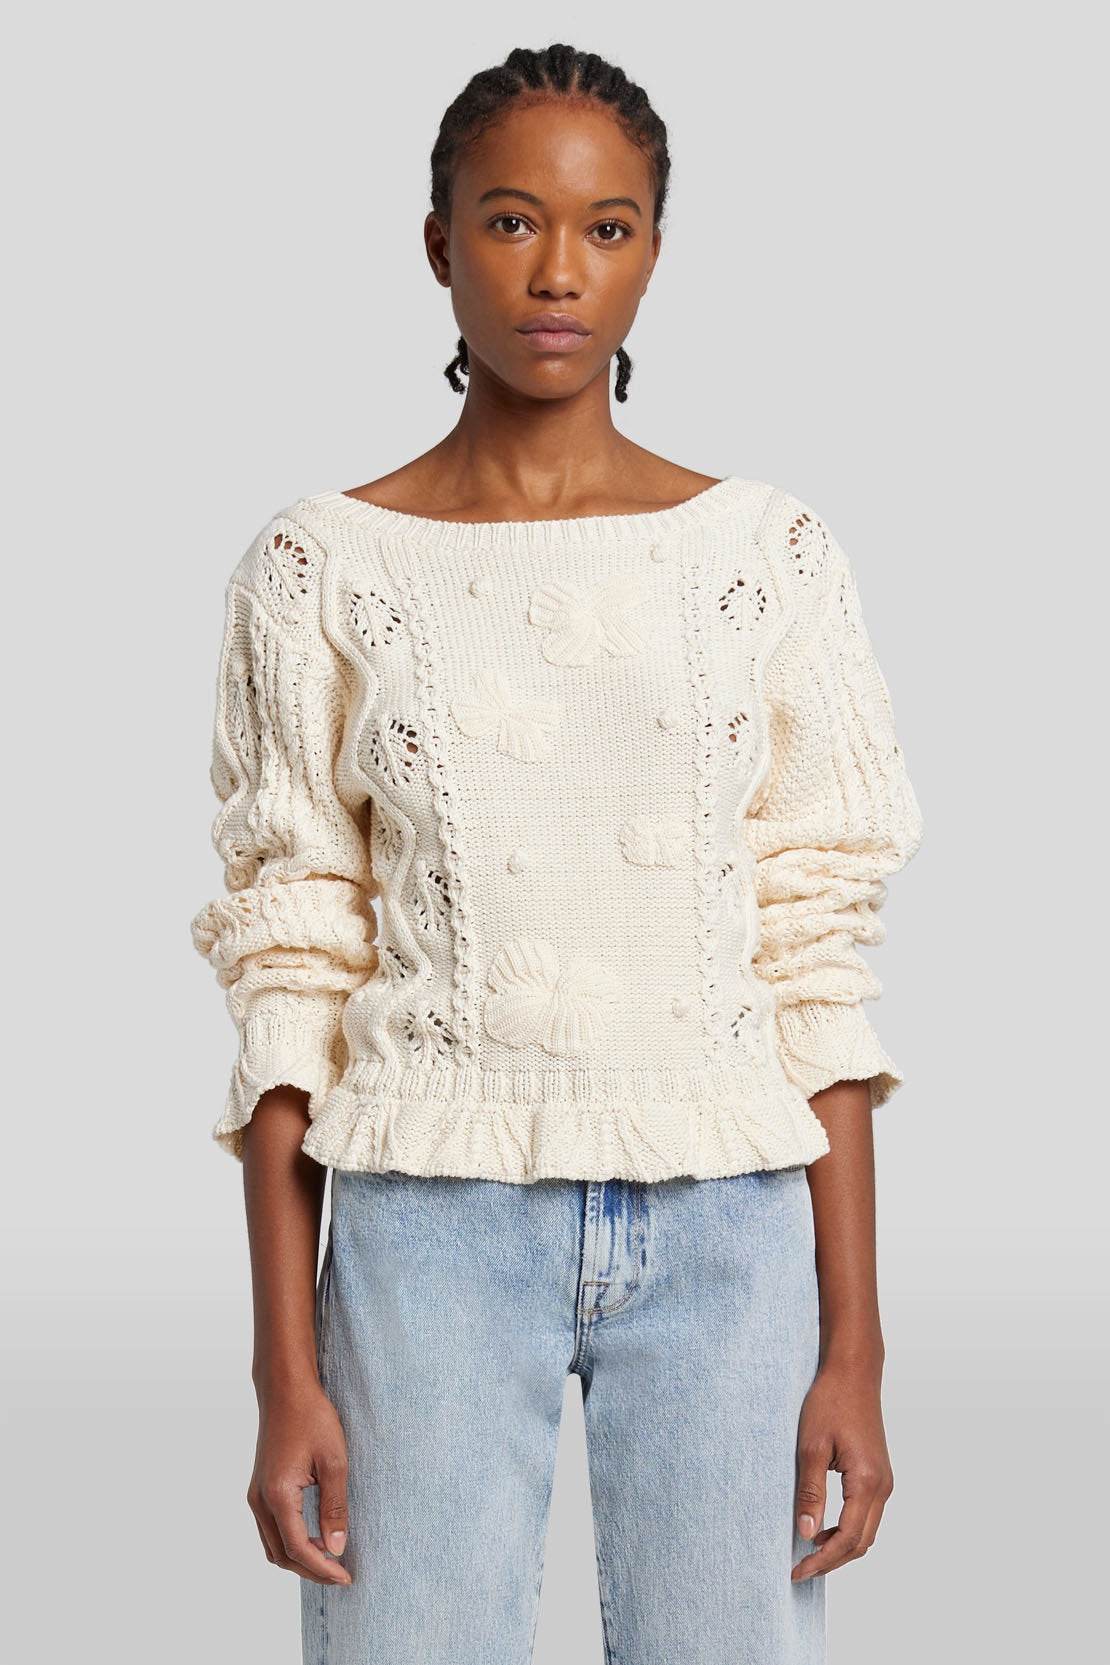 Bobble Sweater Cotton Cream_JSHL5480CR_CR_05